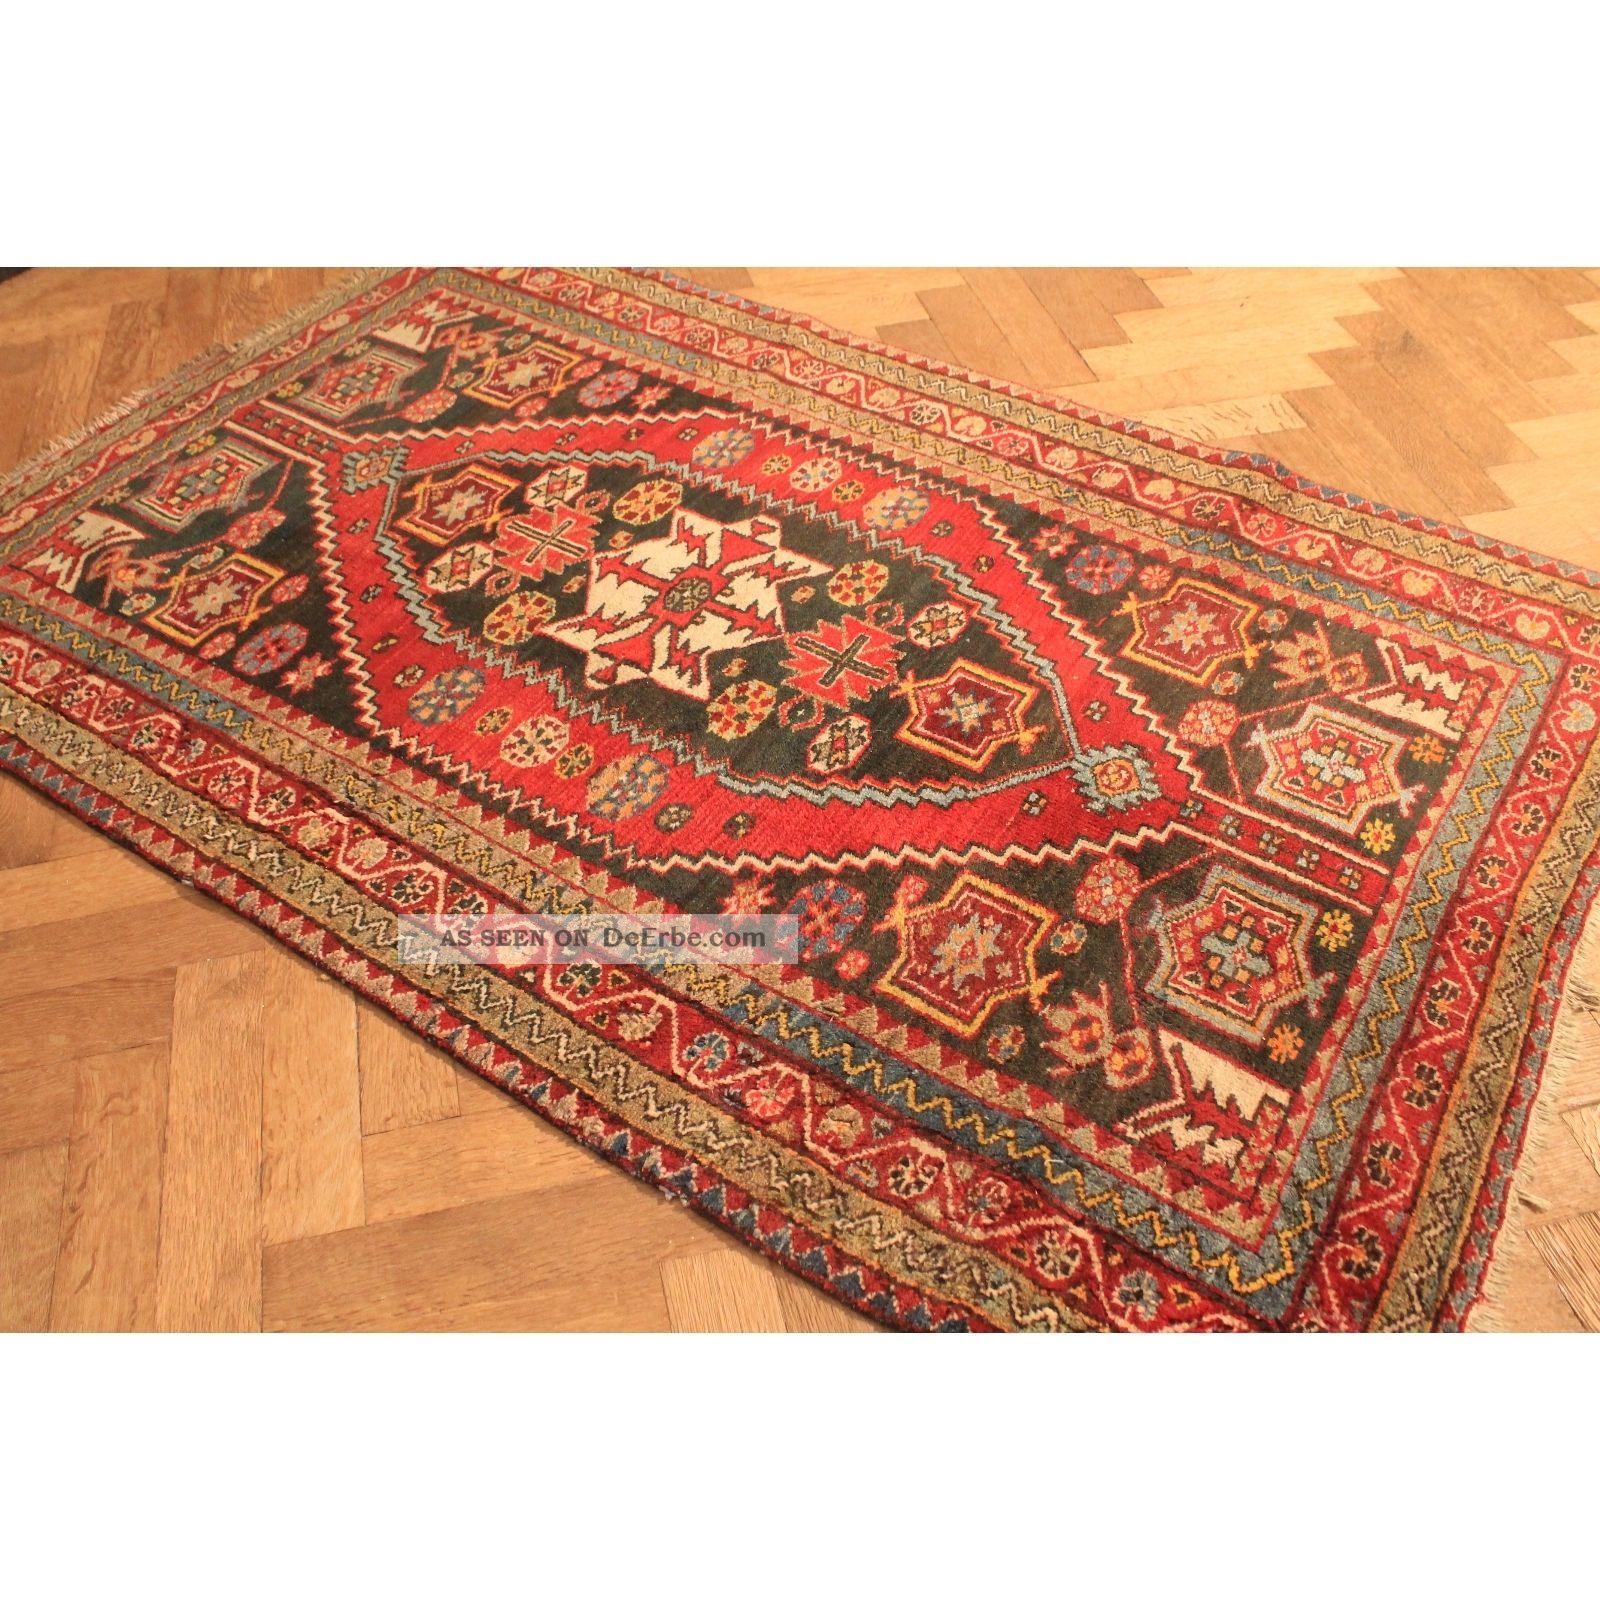 Alt Handgeknüpft Orient Teppich Malaya Ziegler Old Rug Carpet Tappeto 192x125cm Teppiche & Flachgewebe Bild